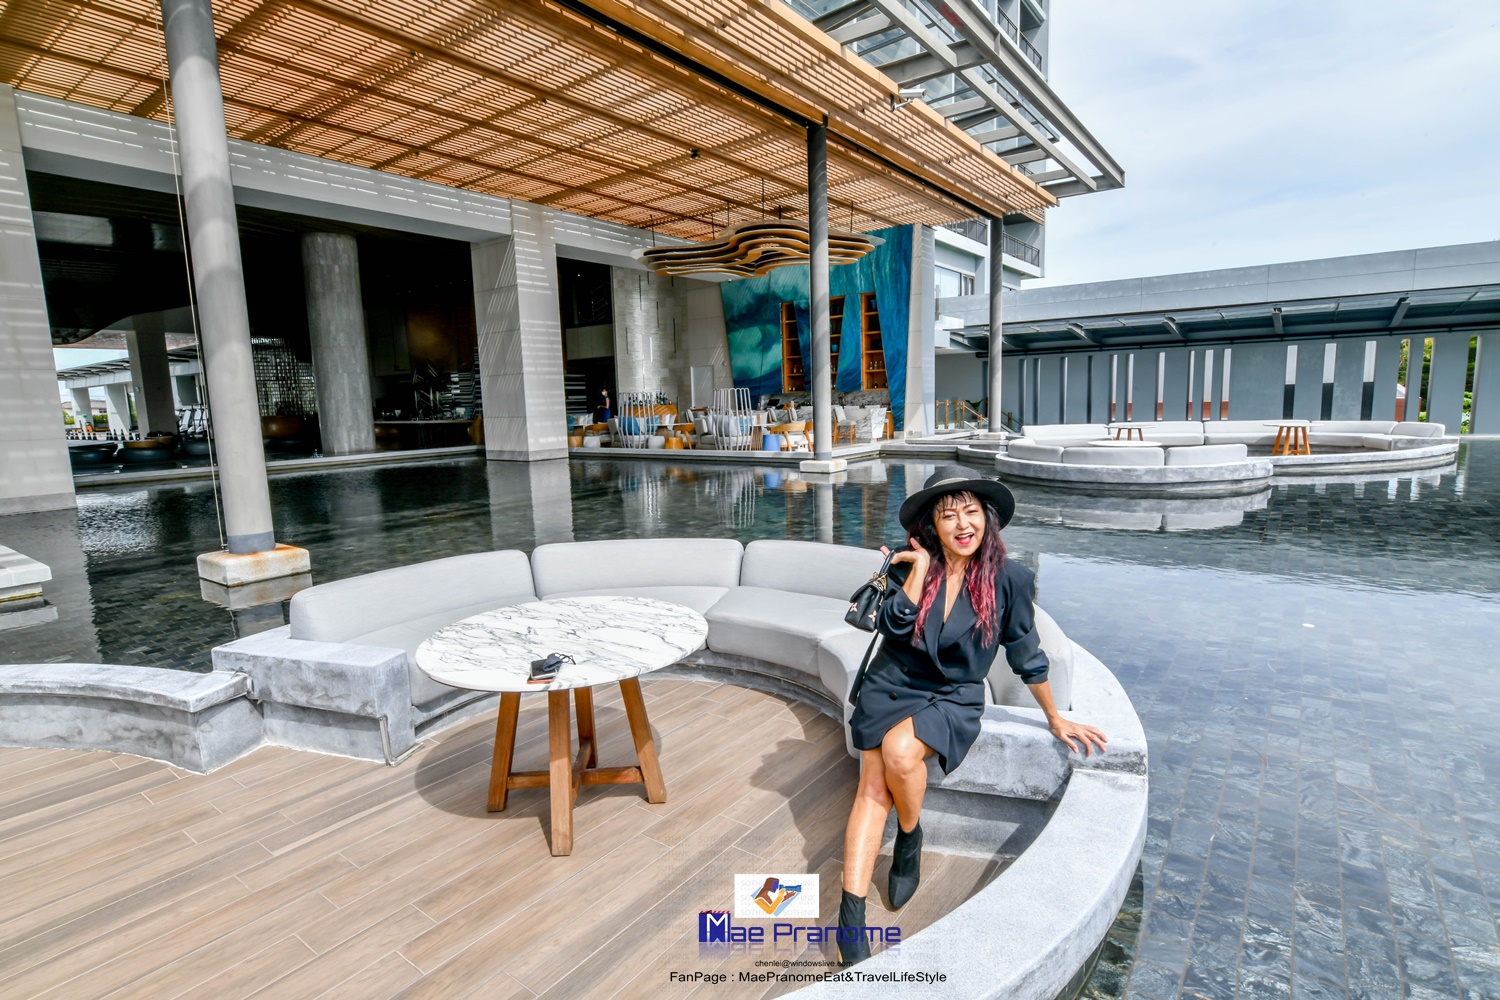 ...รีวิว โรงแรม 5 ดาวสุดหรู Renaissance Pattaya Resort & Spa เรเนซองส์  พัทยา รีสอร์ท แอนด์ สปา กับ แม่ประนอม จ้า - Pantip